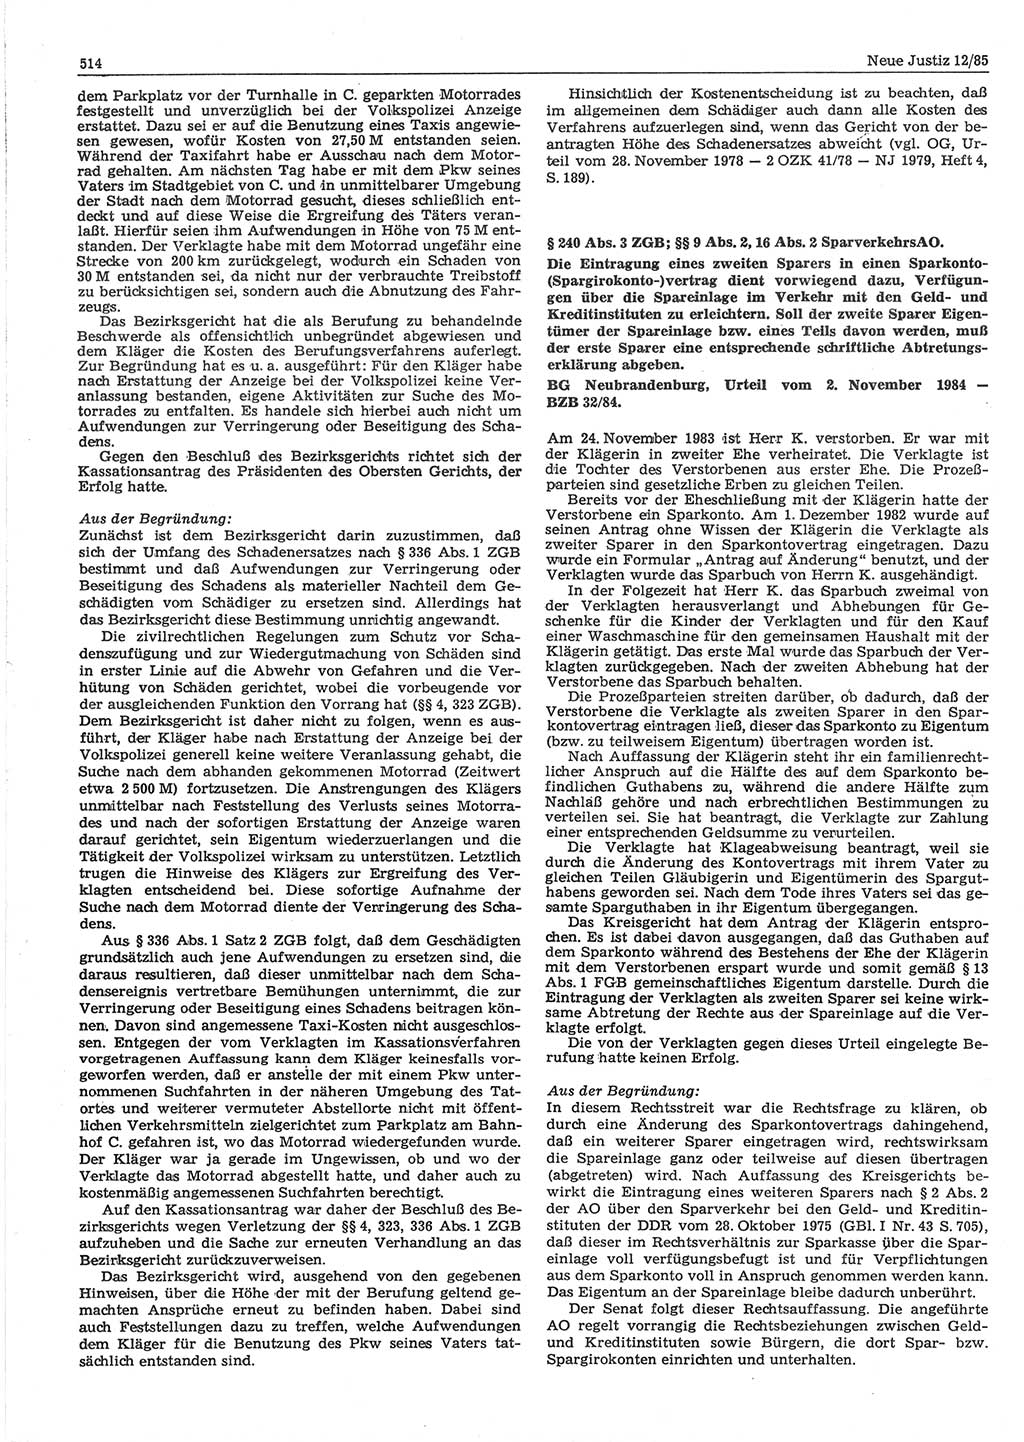 Neue Justiz (NJ), Zeitschrift für sozialistisches Recht und Gesetzlichkeit [Deutsche Demokratische Republik (DDR)], 39. Jahrgang 1985, Seite 514 (NJ DDR 1985, S. 514)